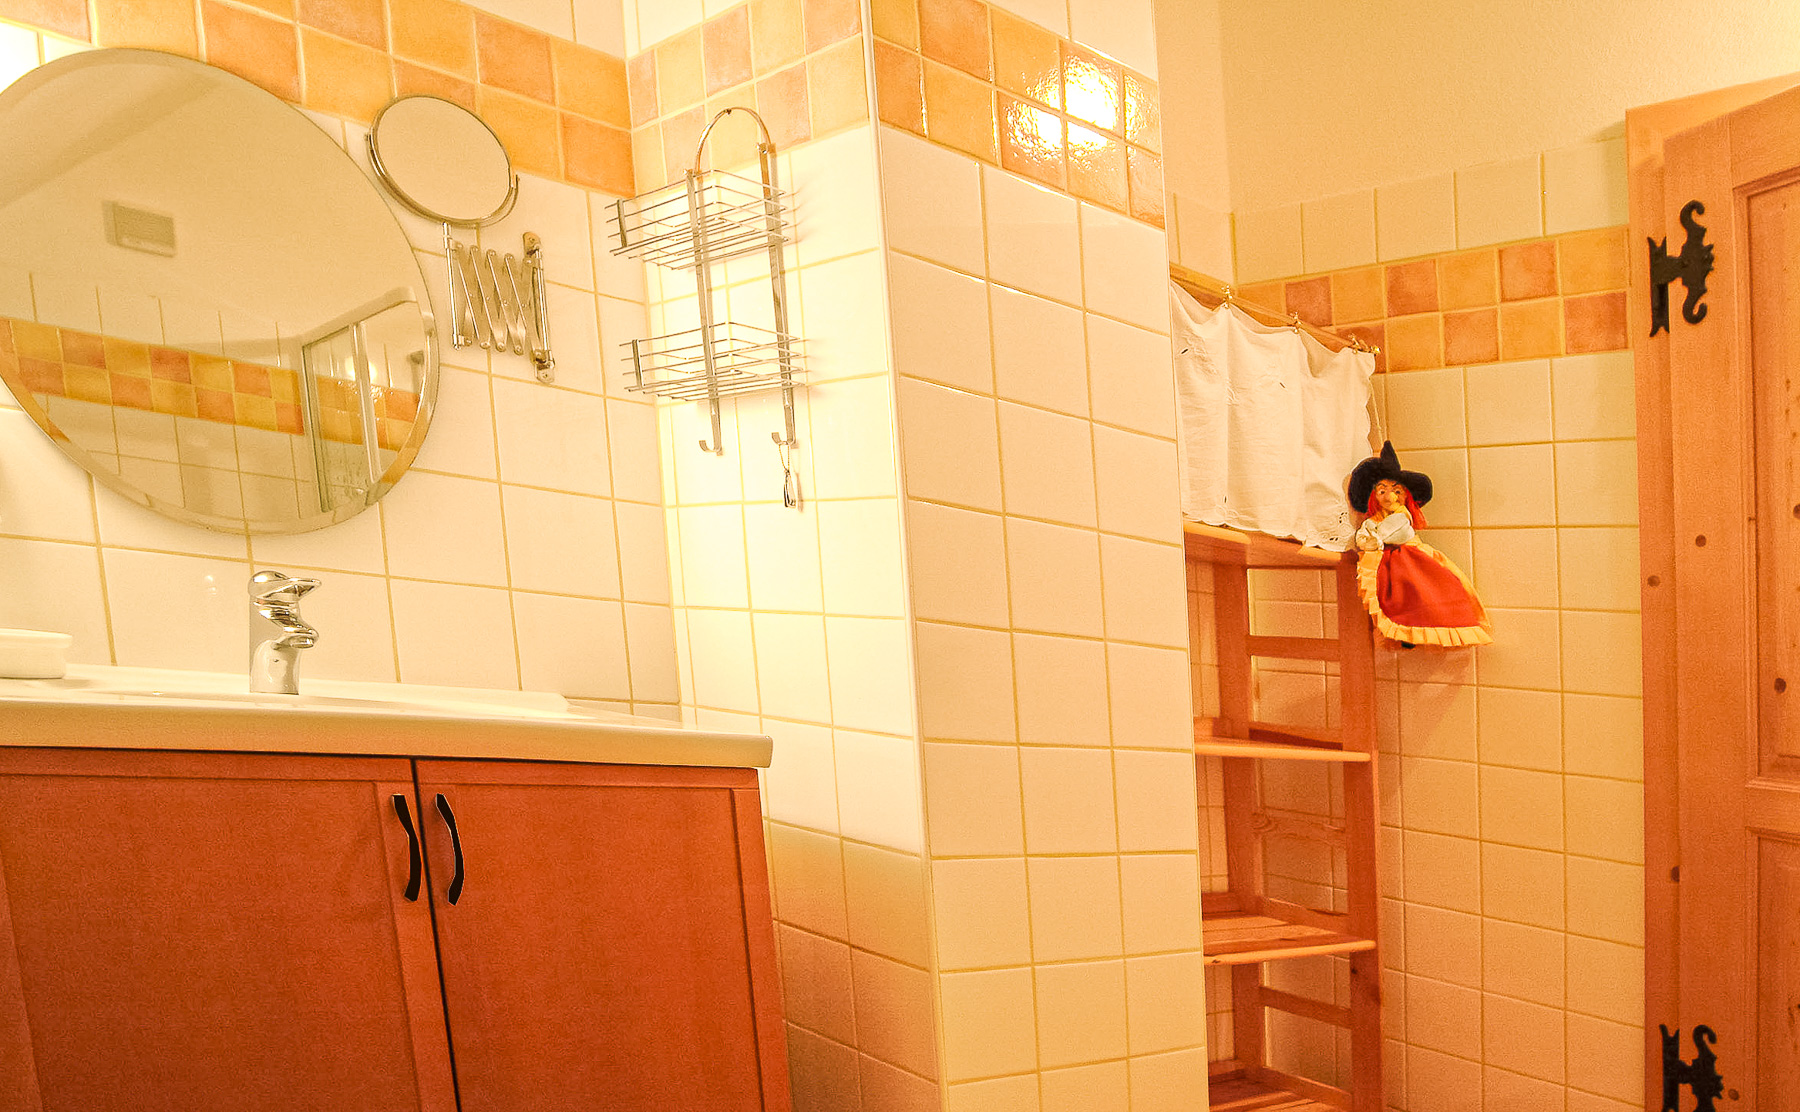 Waschbecken, Spiegel, Regal im Badezimmer der Landhaus-Suite Großmutters